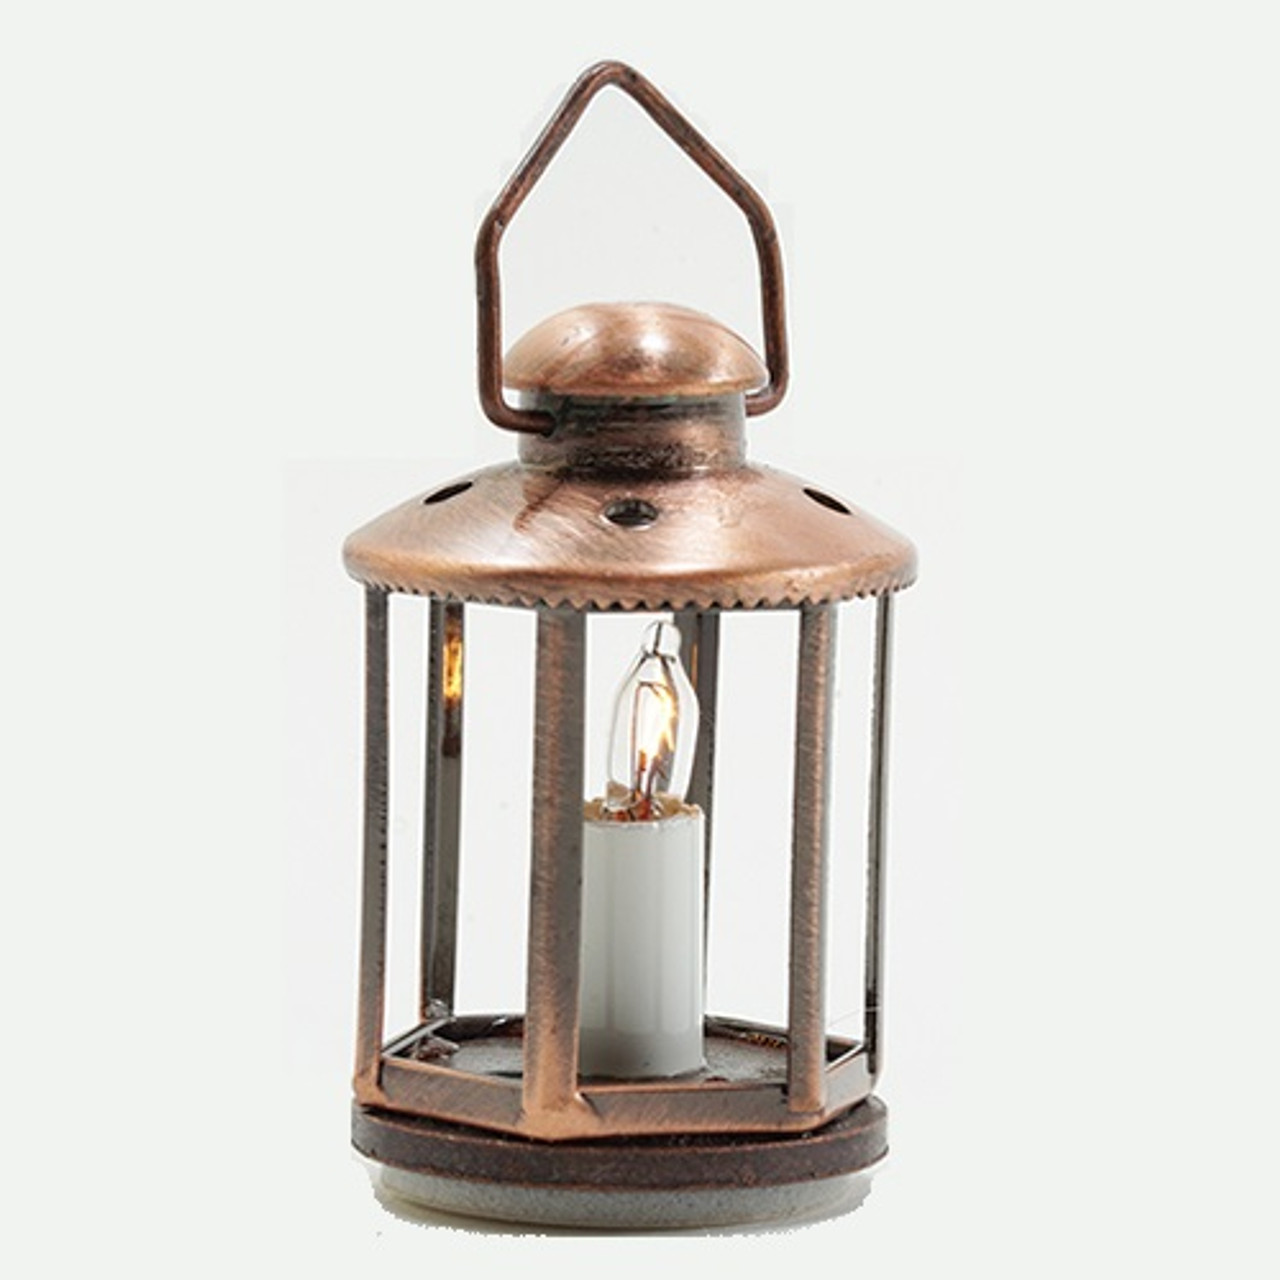 Copper Lantern (MH1061) shown lit